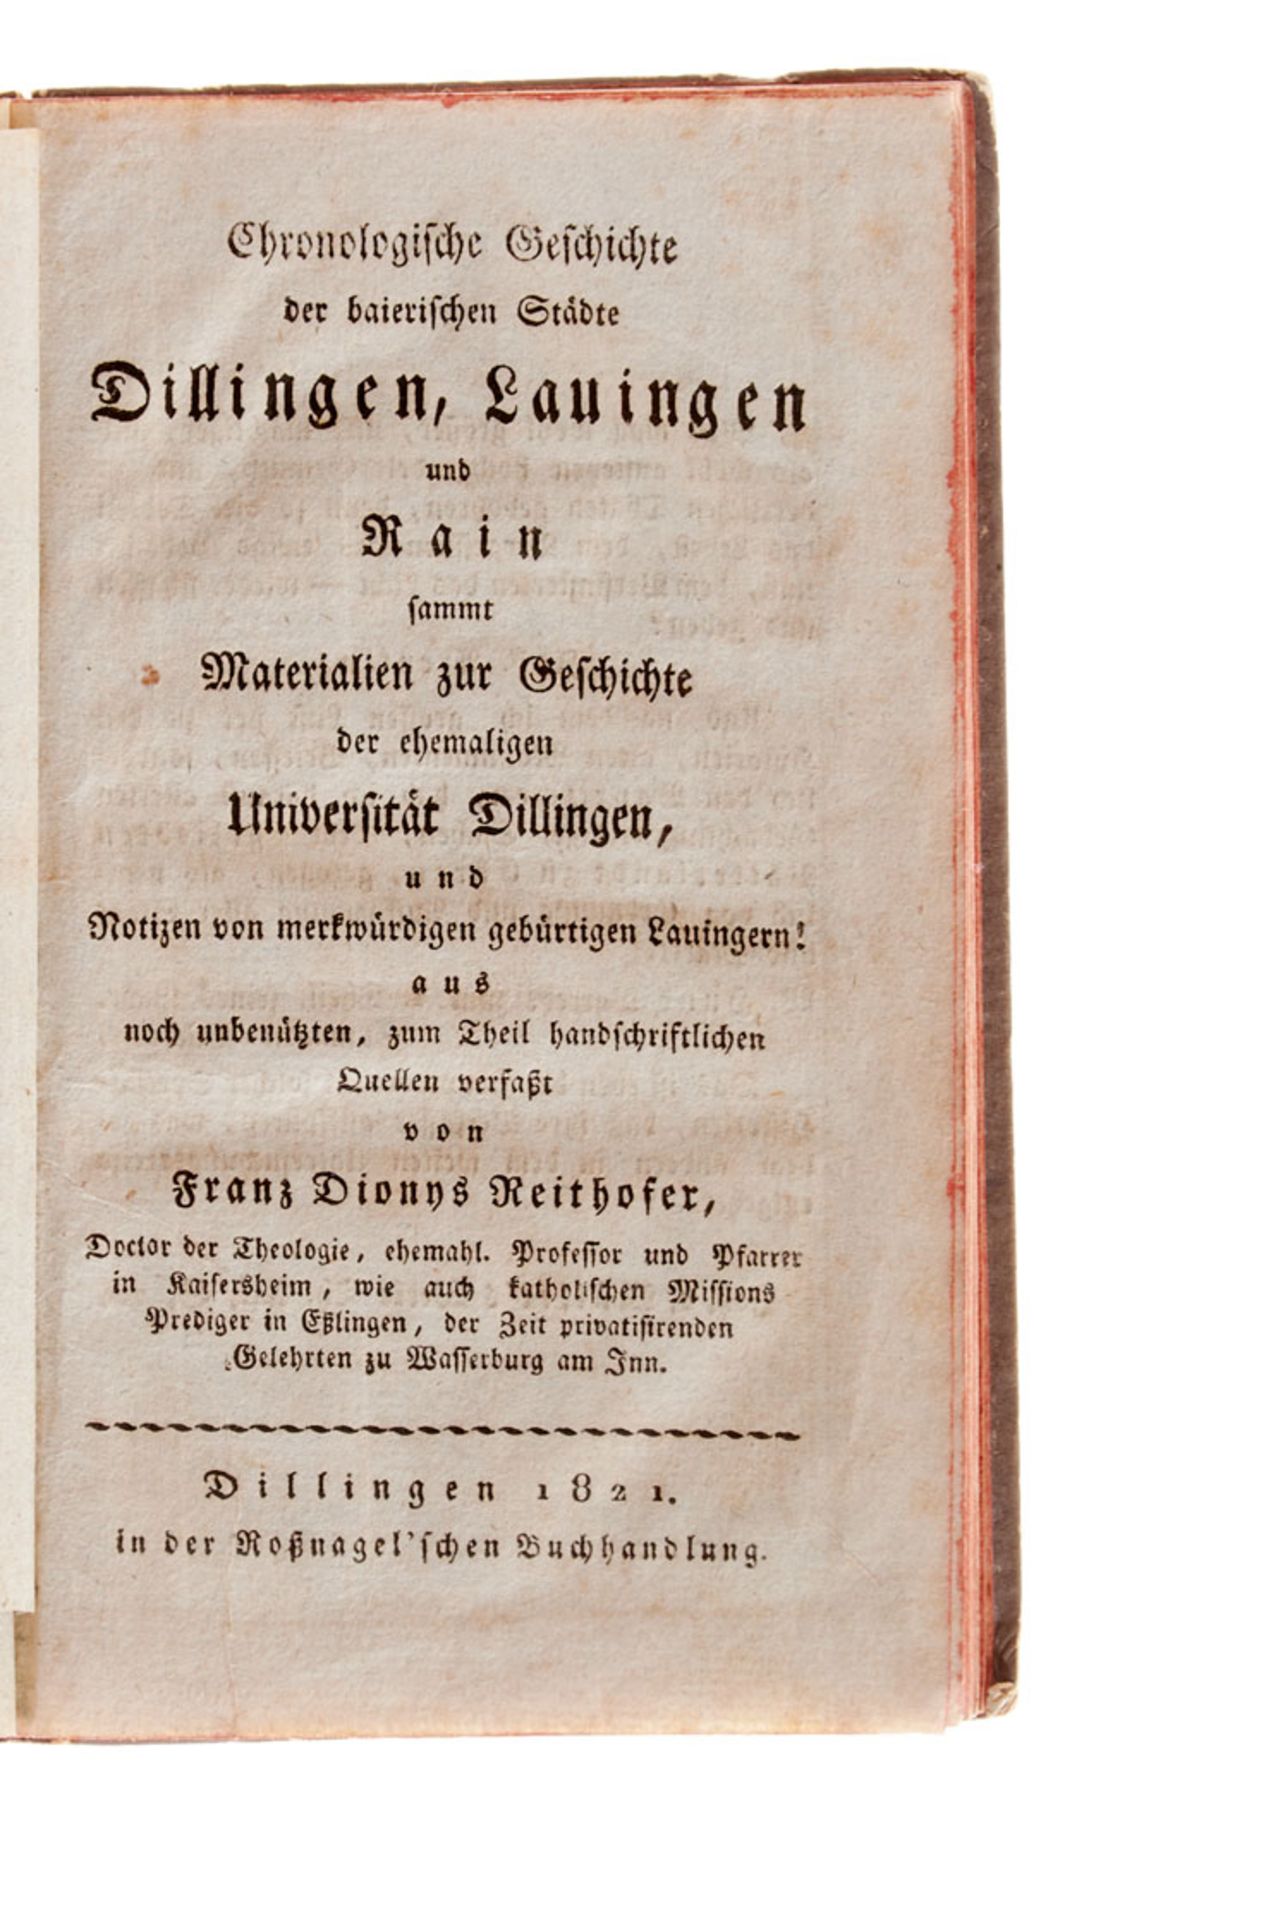 Dillingen - Reithofer, F. D., Chronologische Geschichte der baierischen Städte - Image 3 of 3